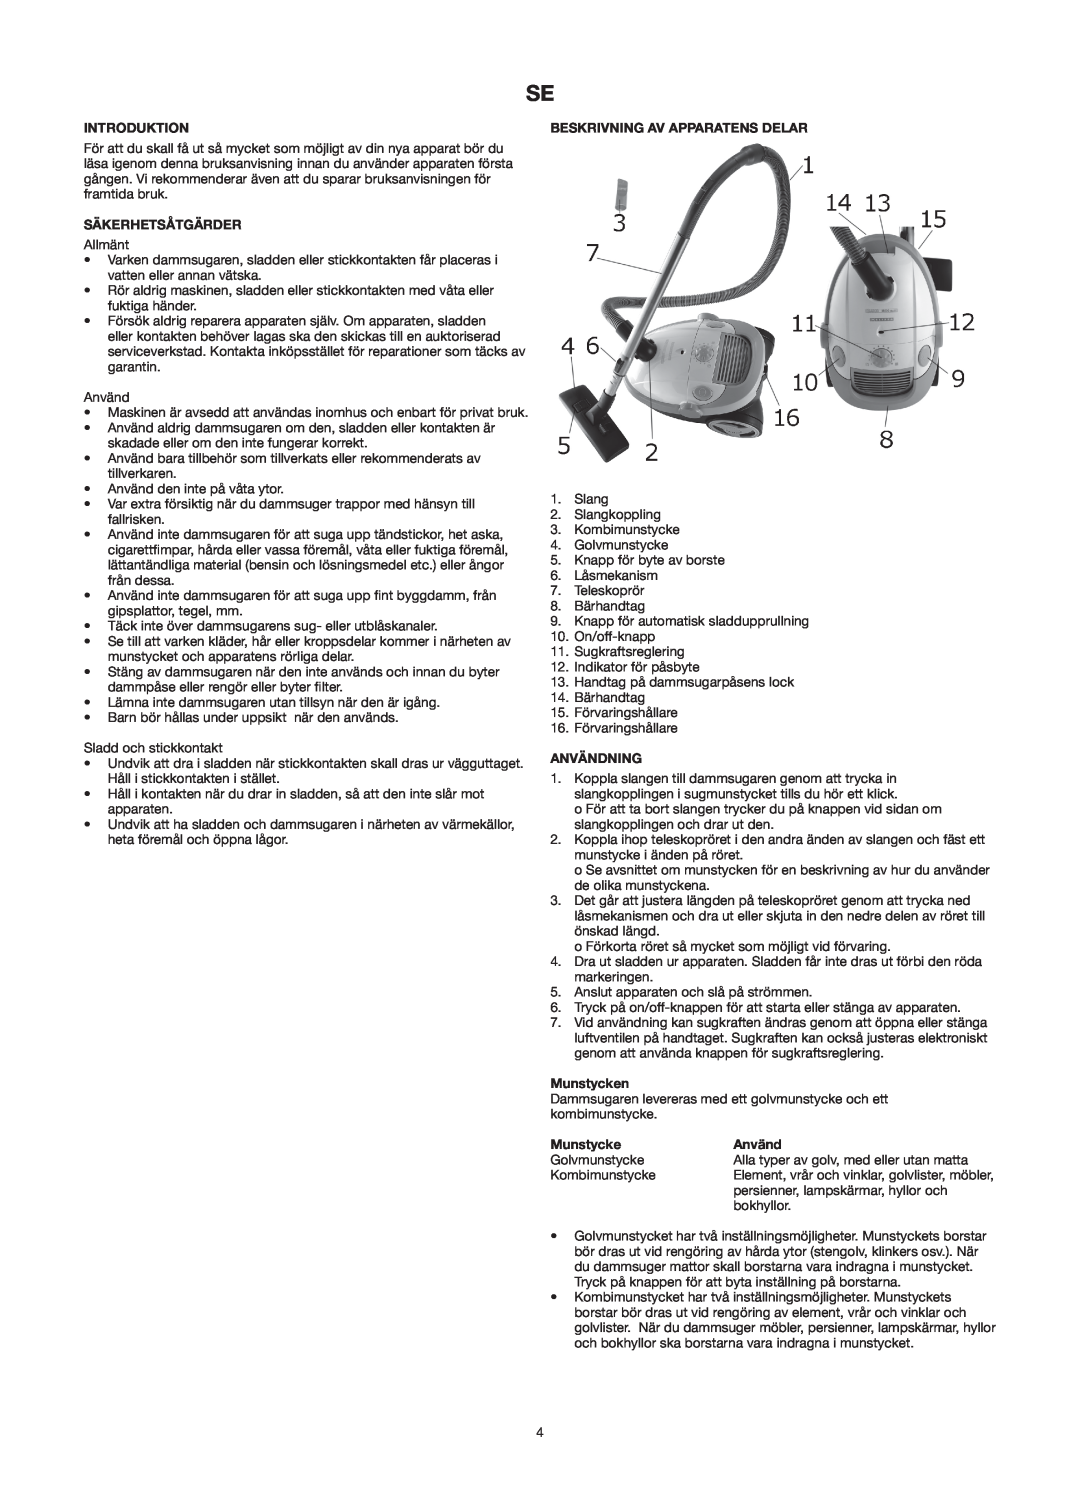 Melissa 640-141 manual Säkerhetsåtgärder, Beskrivning Av Apparatens Delar, Användning, Munstycken, Introduktion 